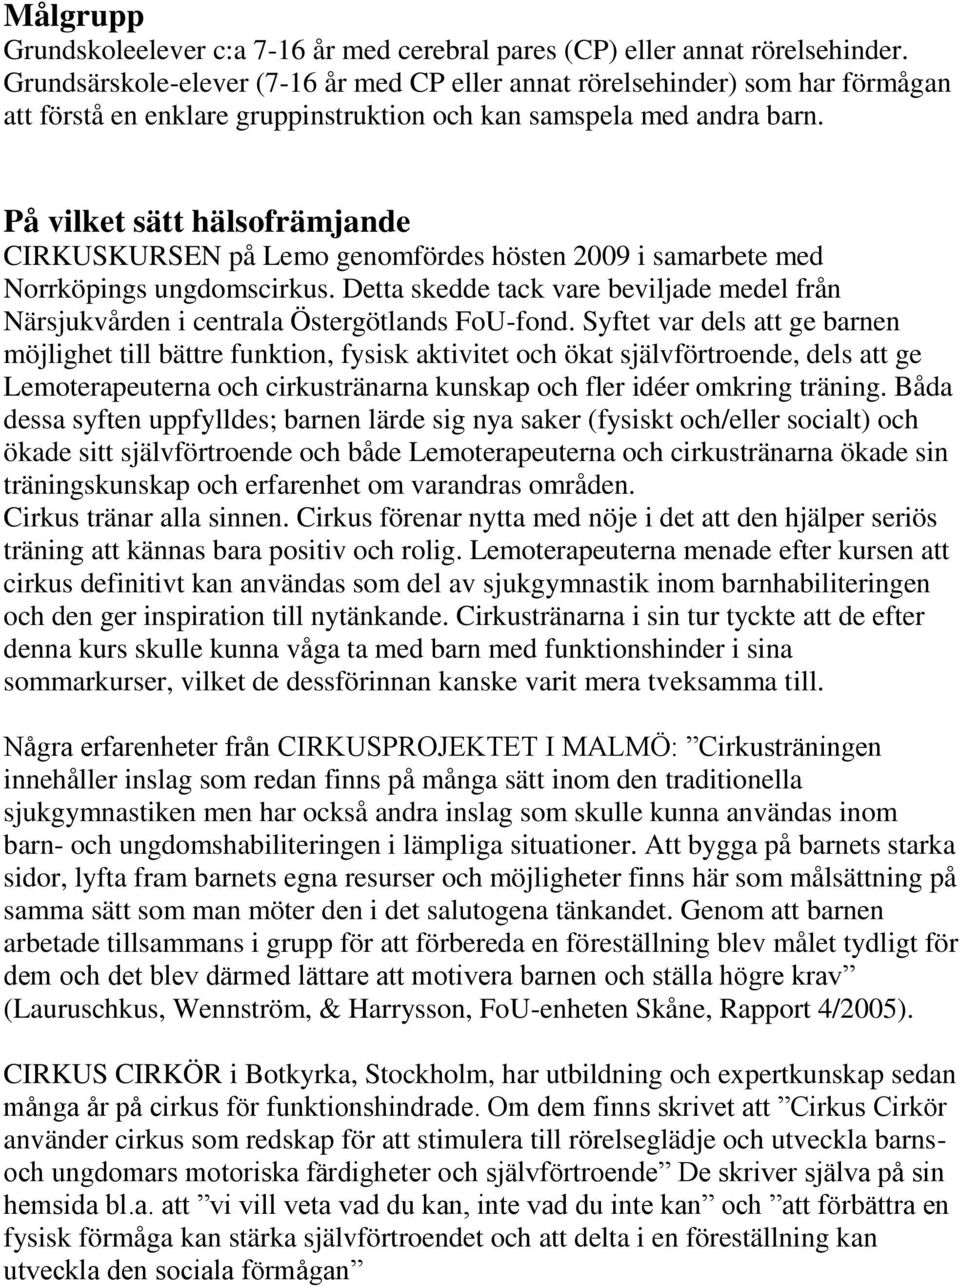 På vilket sätt hälsofrämjande CIRKUSKURSEN på Lemo genomfördes hösten 2009 i samarbete med Norrköpings ungdomscirkus.